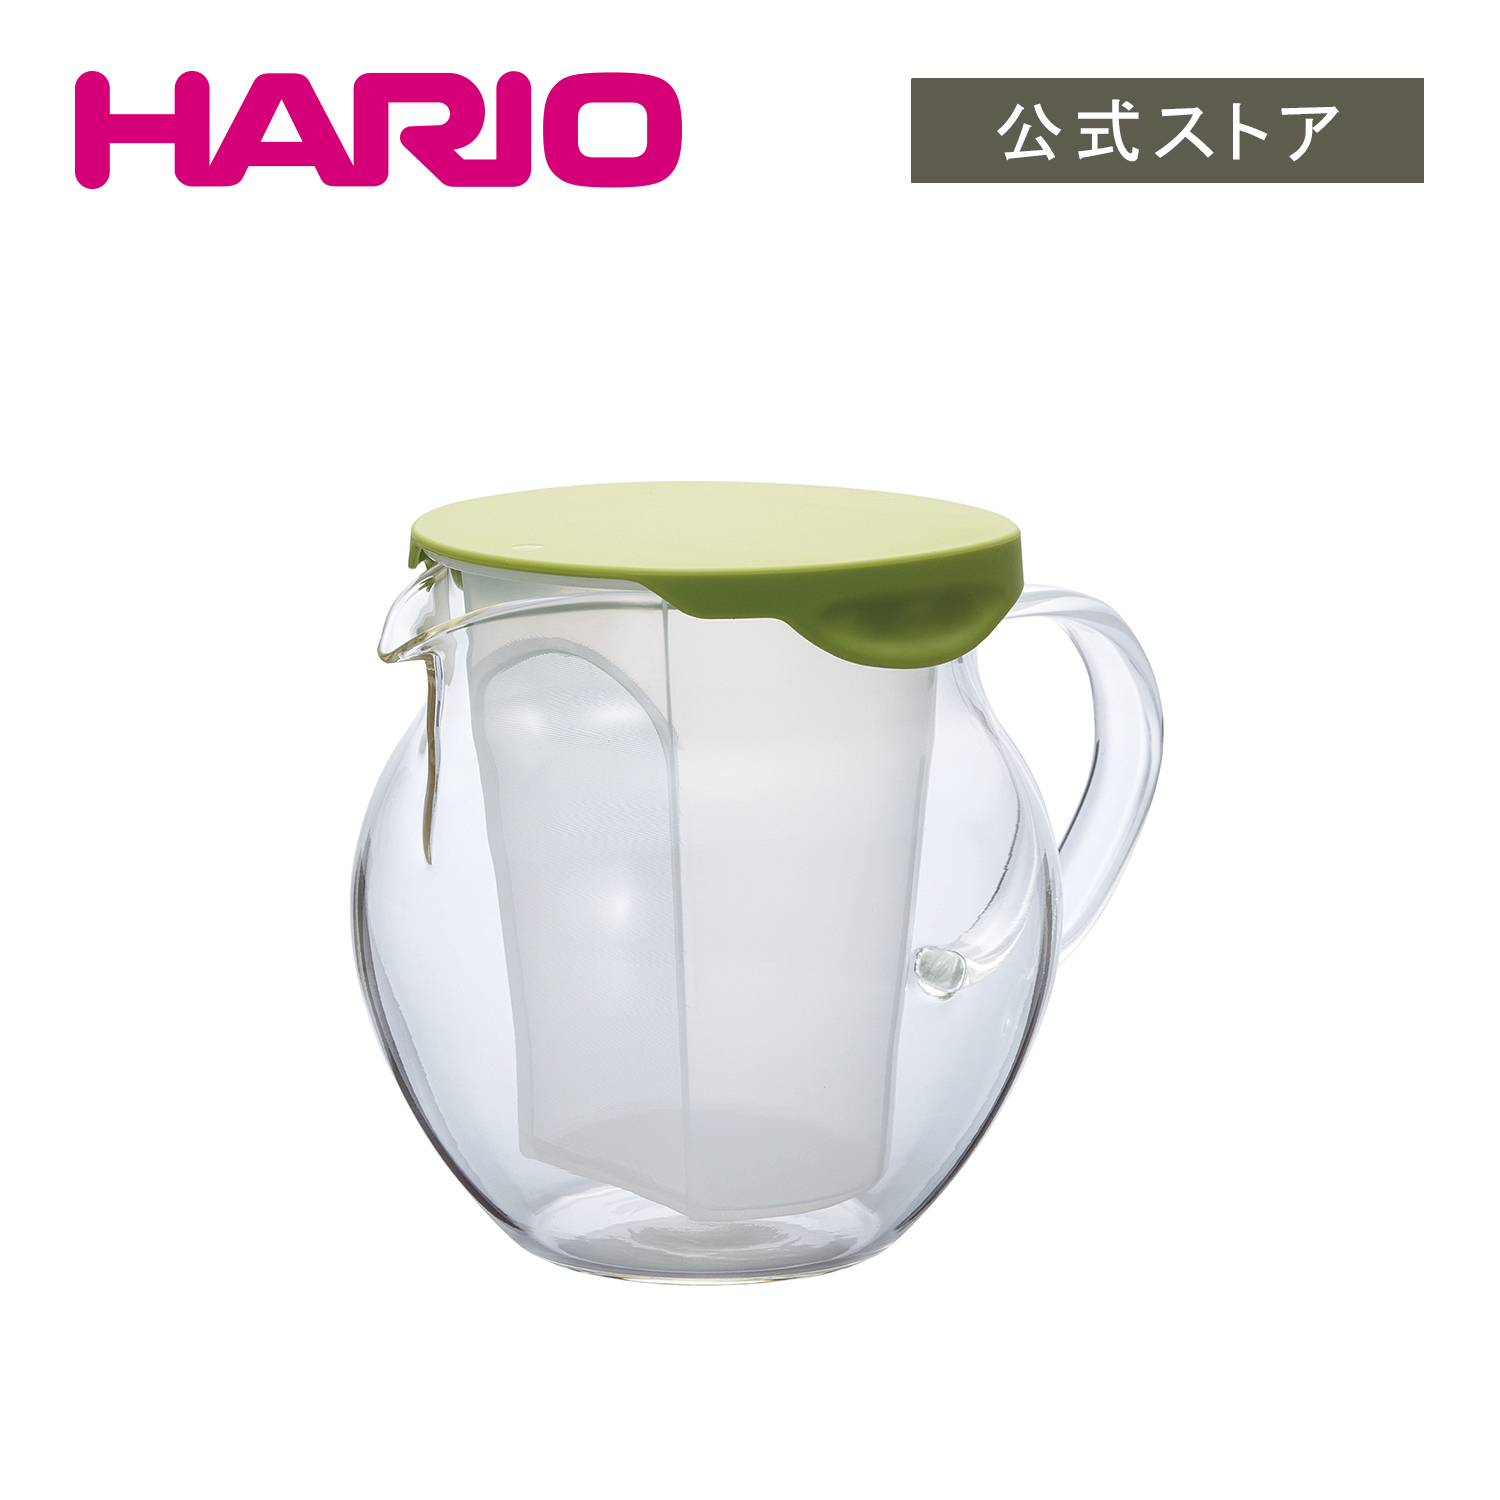 【公式ショップ】HARIO 茶茶・フラッティ HARIO公式NETSHOP